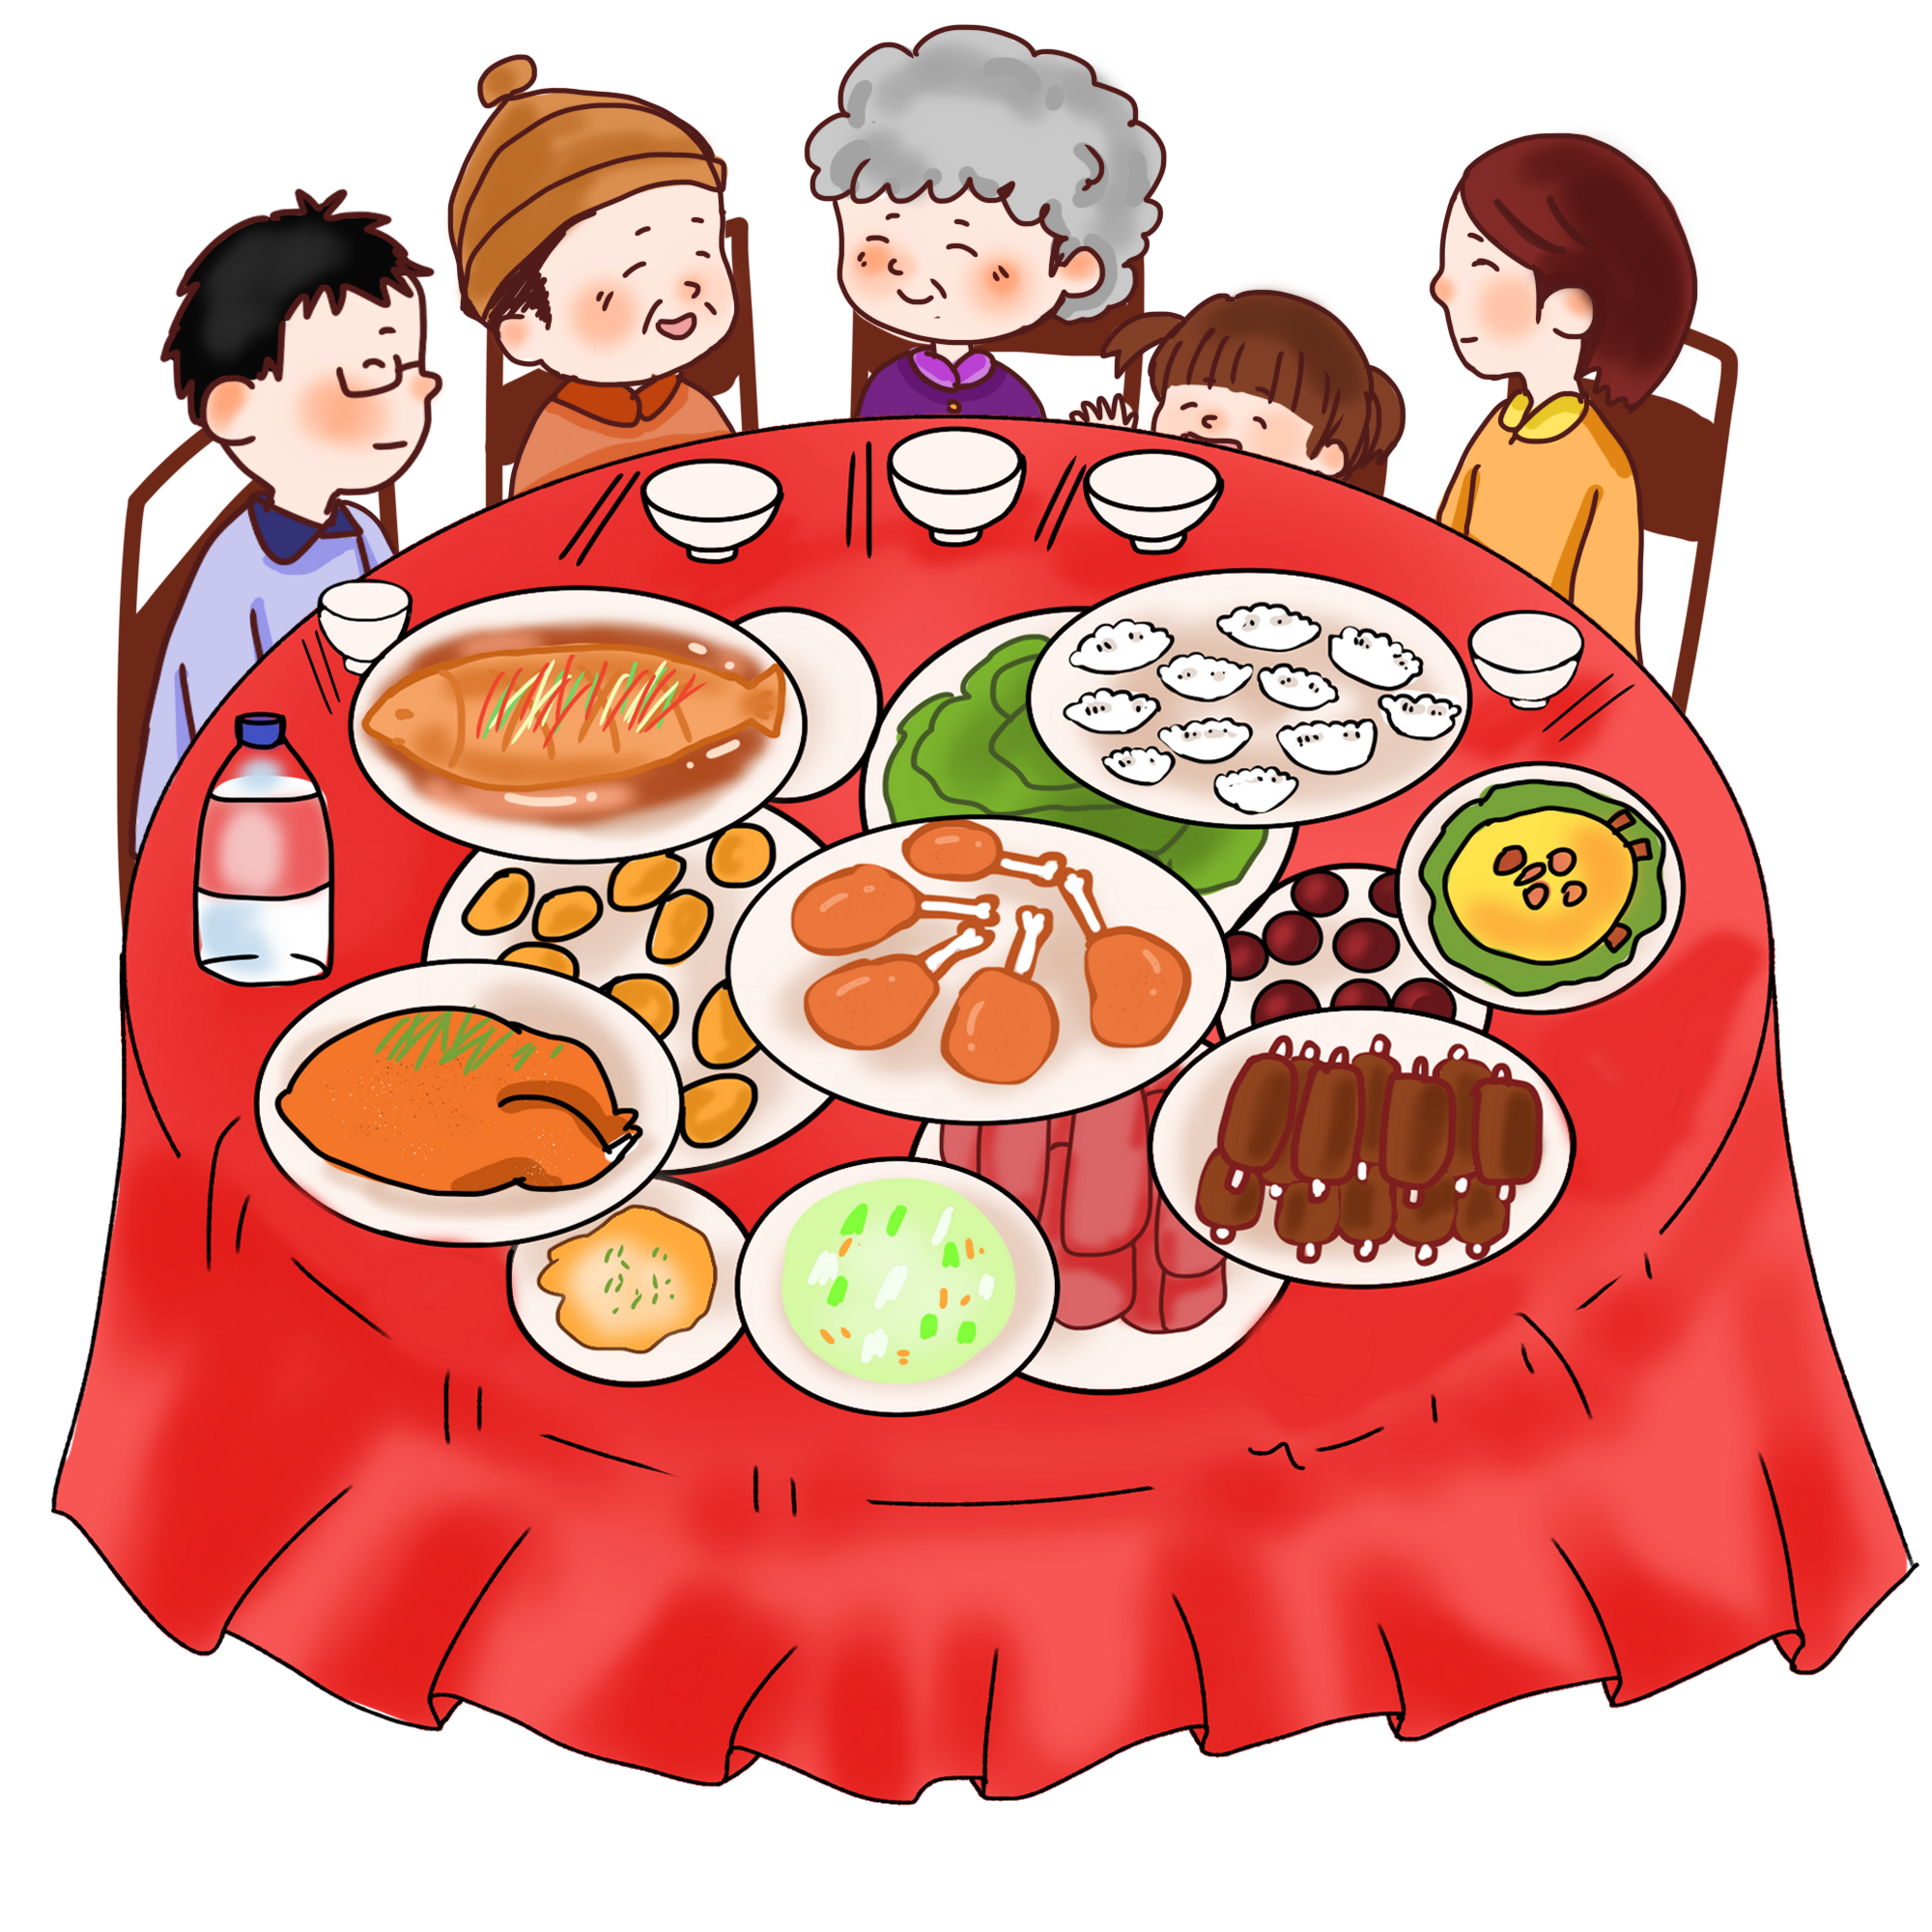 旧时北京人过年要吃荸荠,荸荠谐音必齐,说的就是新年亲人必须齐全